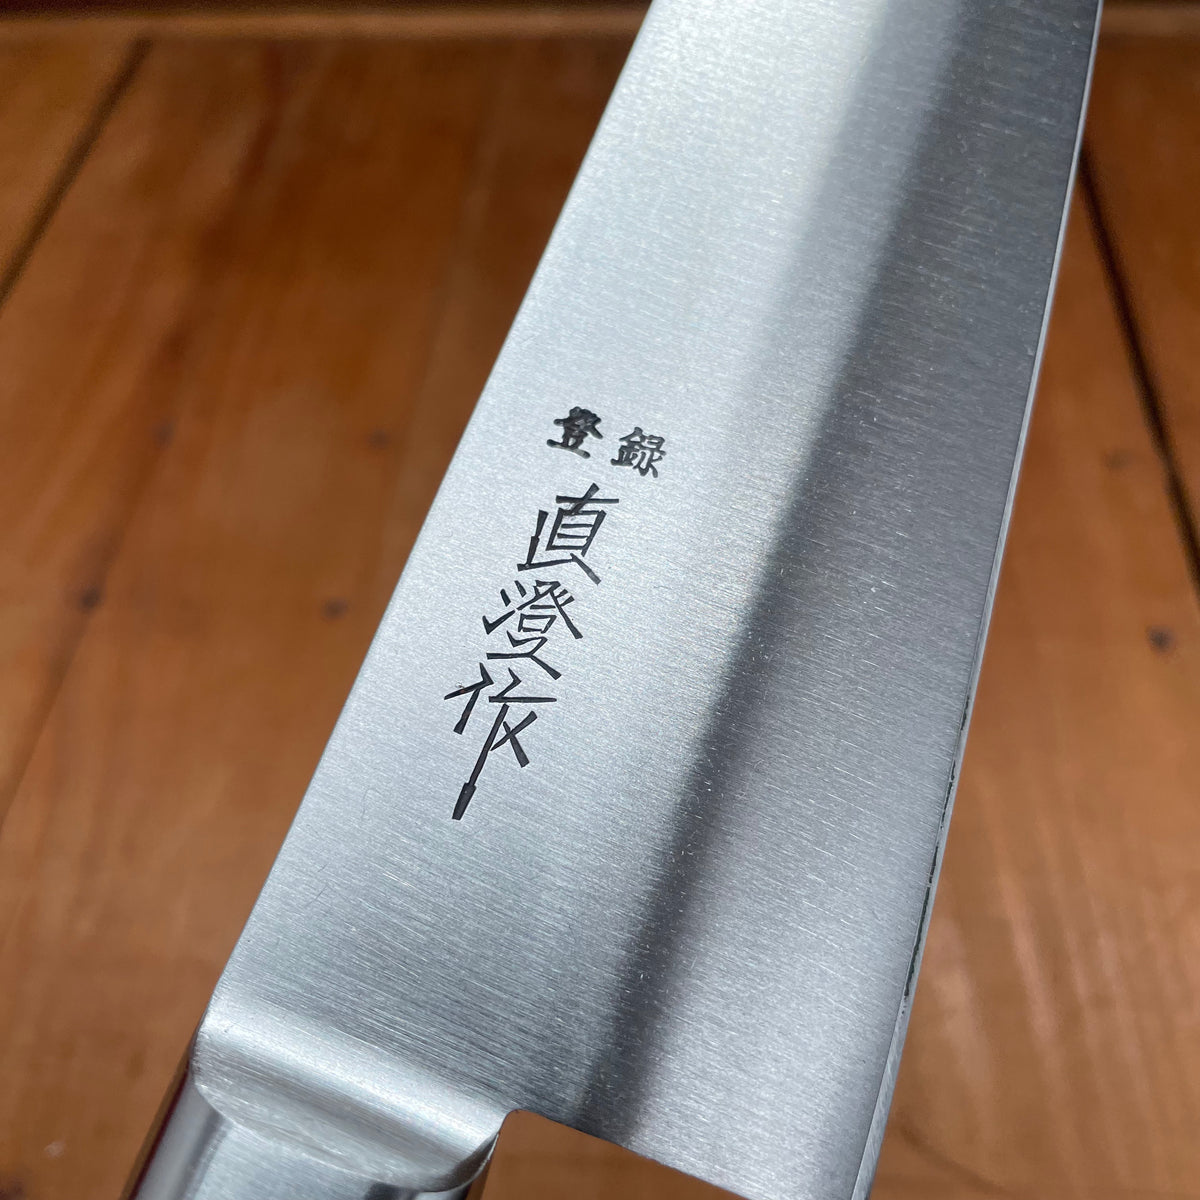 Naozumi Nihonkou 210mm Yo-Deba Carbon Steel